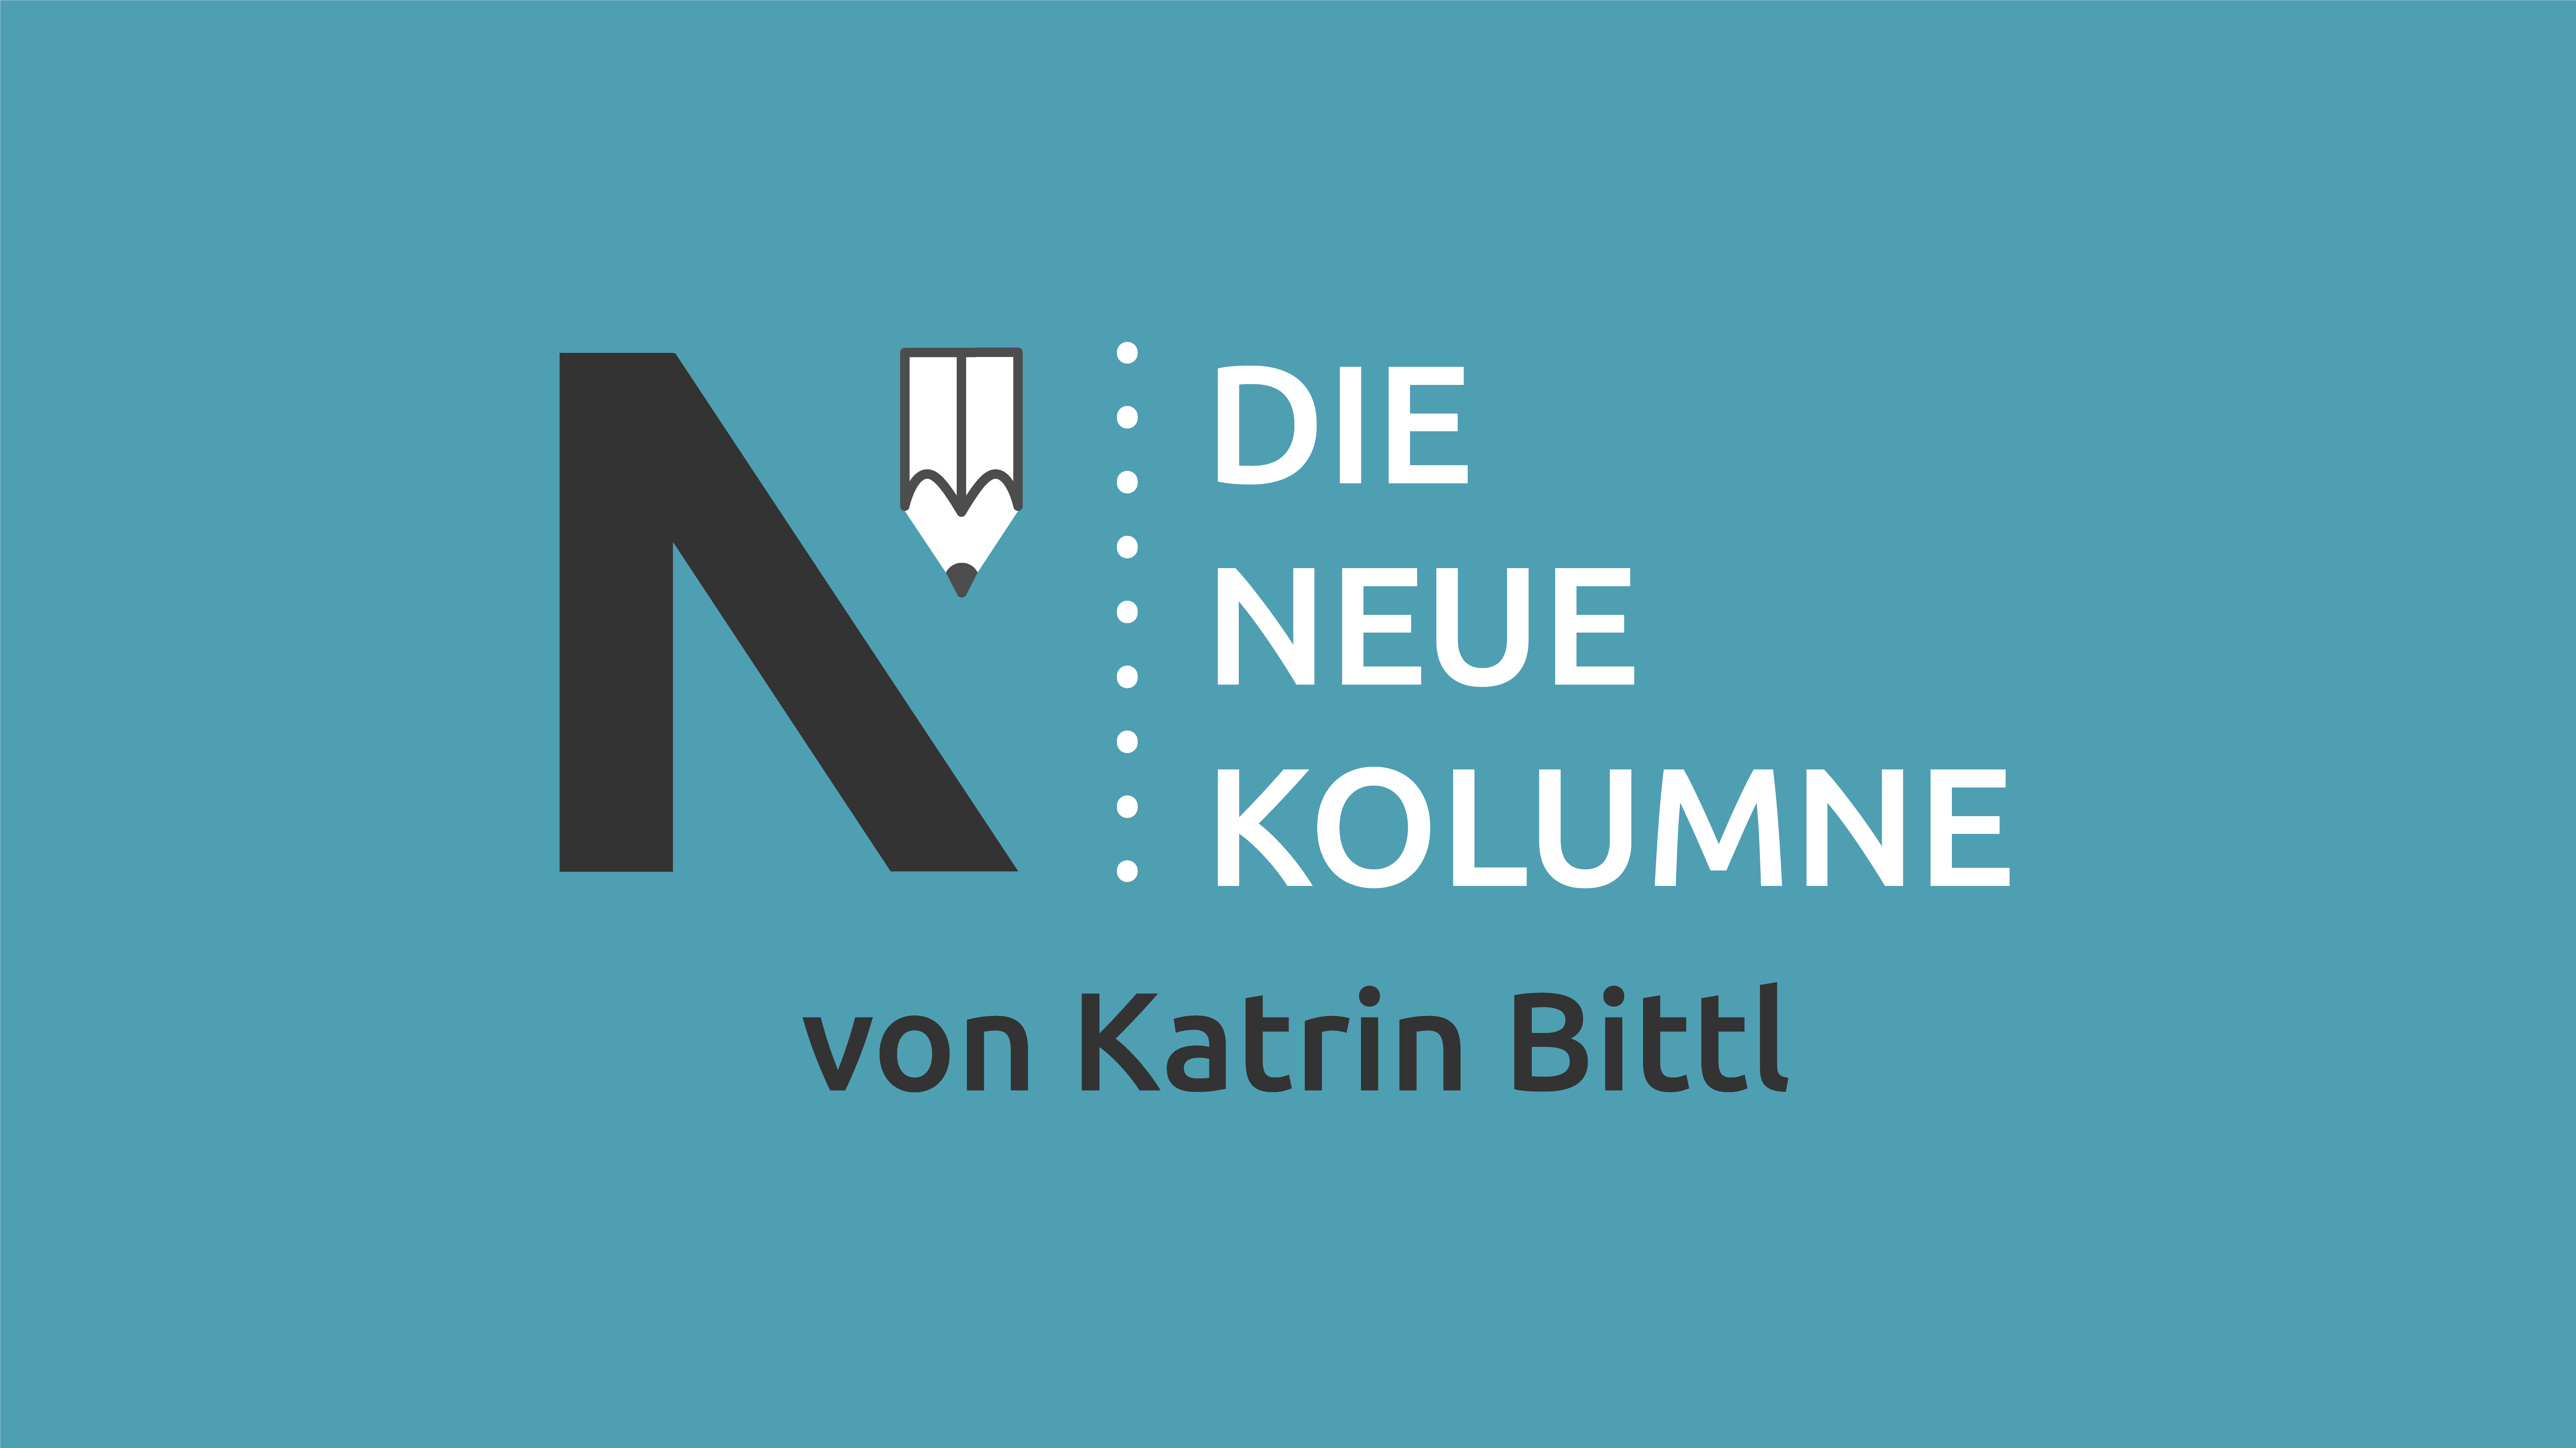 Das Logo von Die Neue Norm auf türkiesem Grund. Rechts davon steht: Die Neue Kolumne. Unten steht: Von Katrin Bittl.